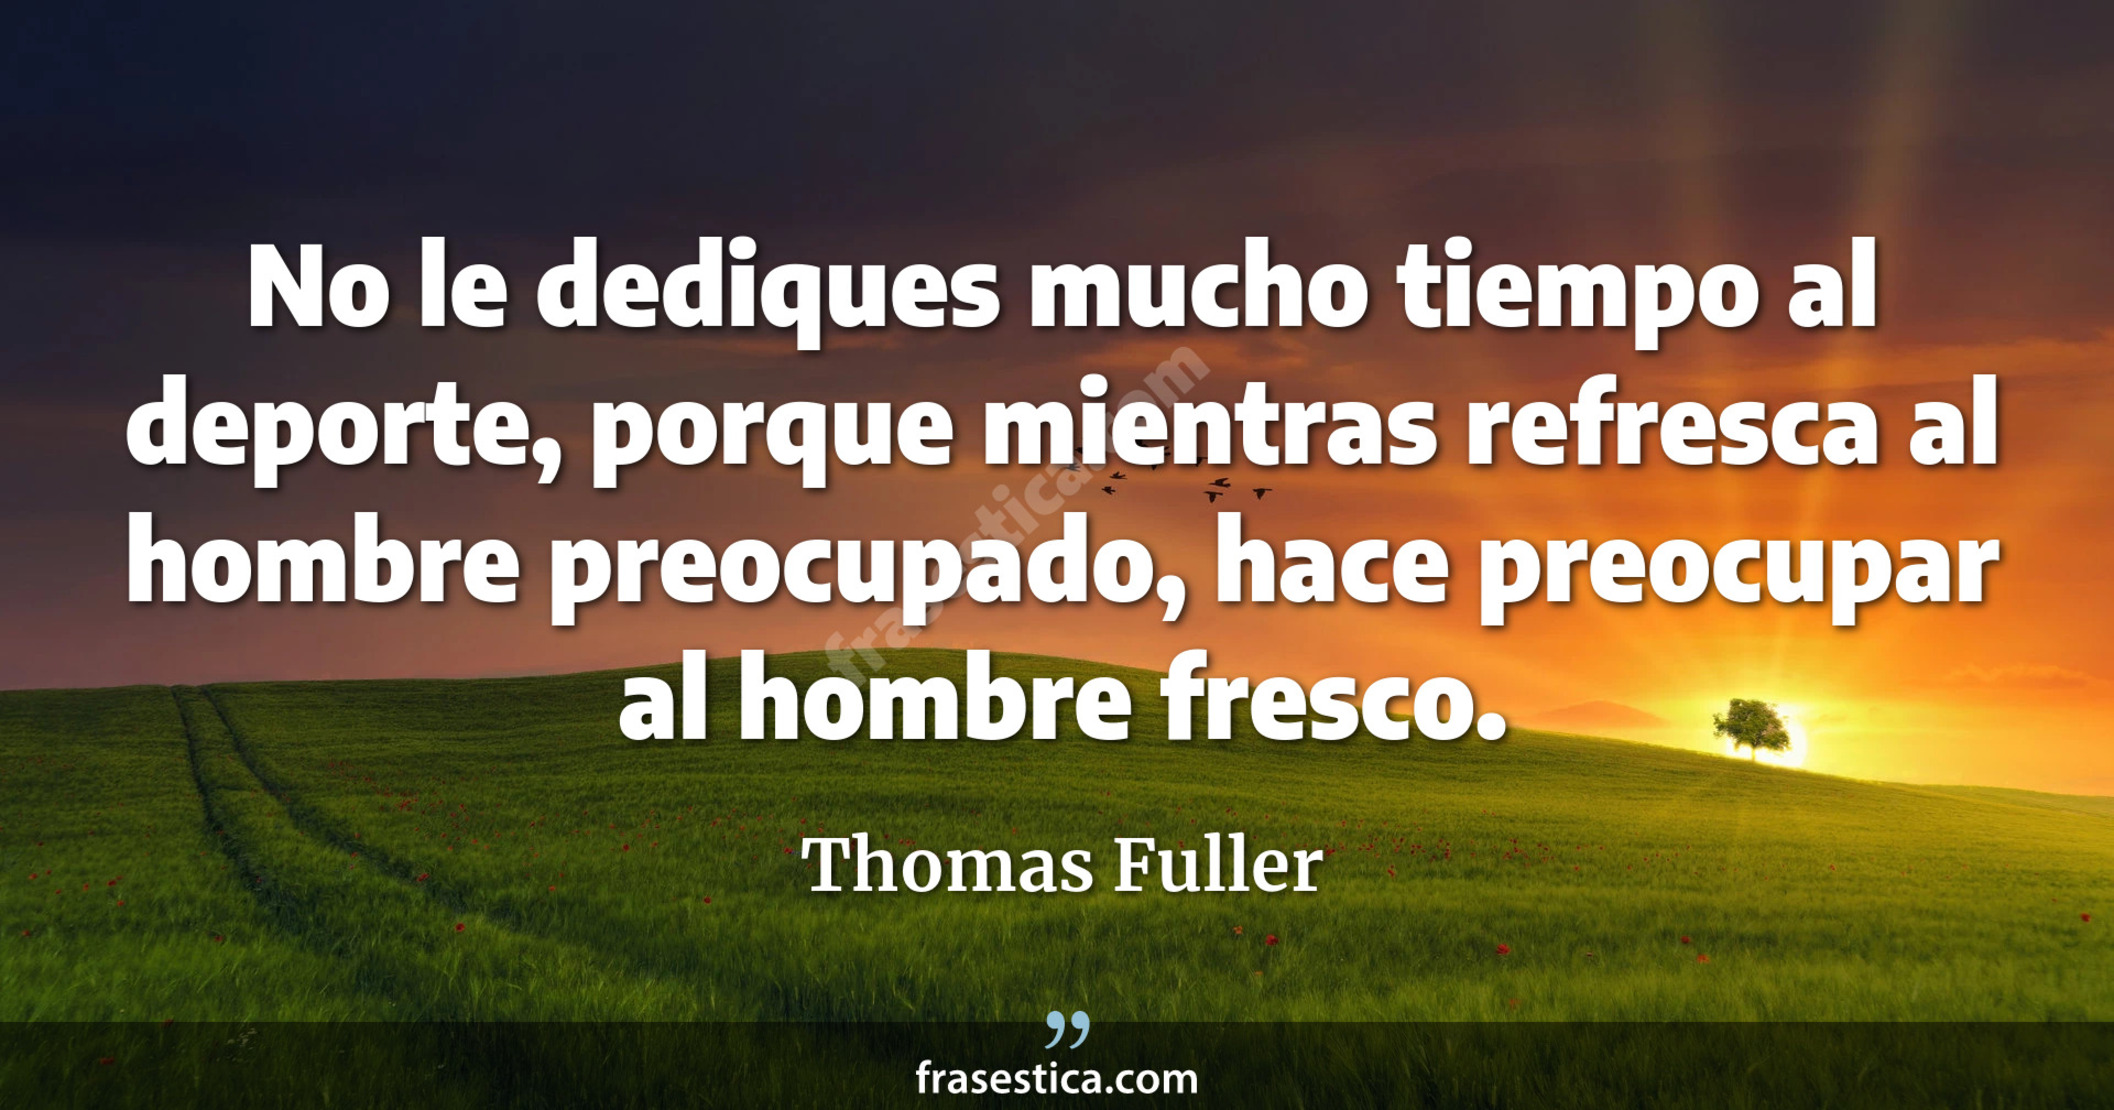 No le dediques mucho tiempo al deporte, porque mientras refresca al hombre preocupado, hace preocupar al hombre fresco. - Thomas Fuller